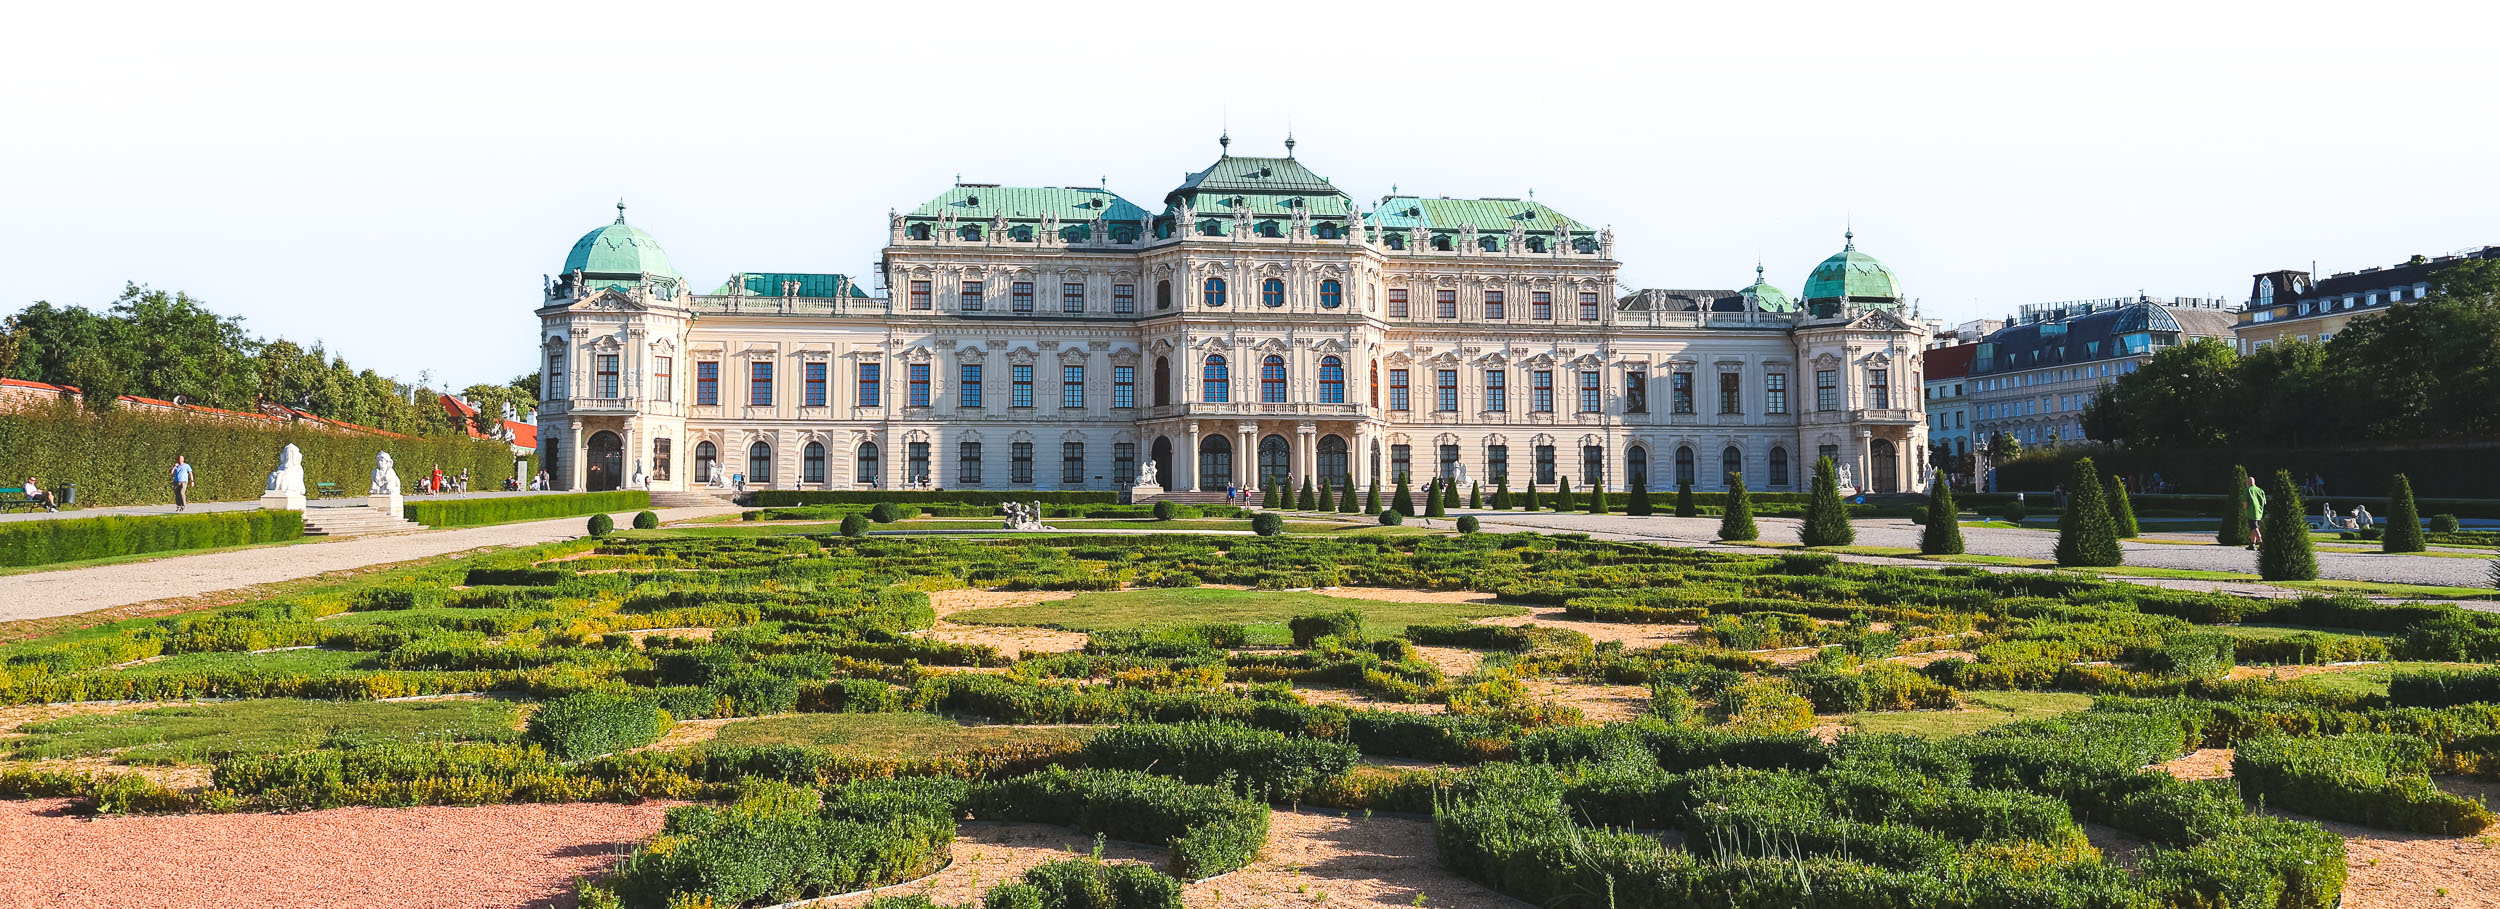 Gardens of Belvedere Palace Complex in Landstrasse, Vienna